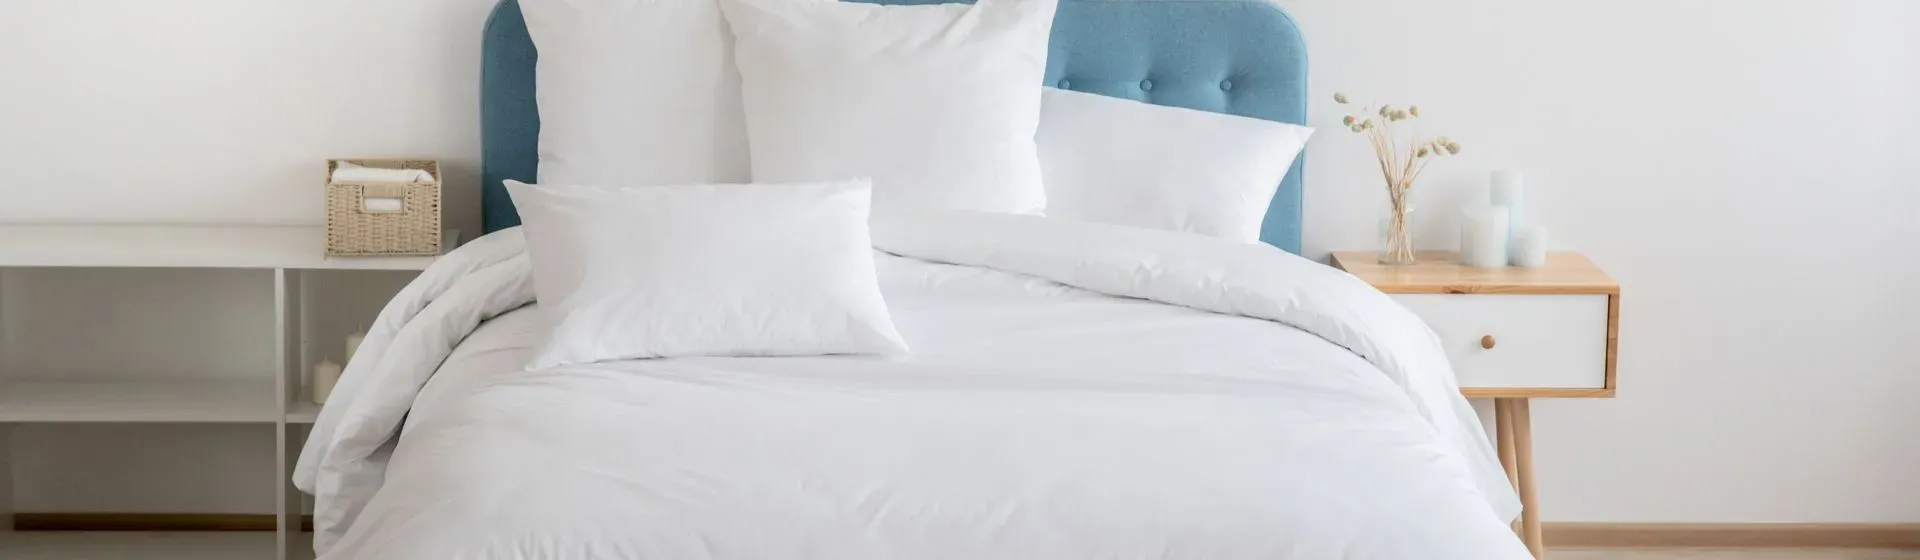 Colchão de casal com edredom e travesseiros brancos espalhados na cama, com cabeceira azul clara e móveis nas laterais